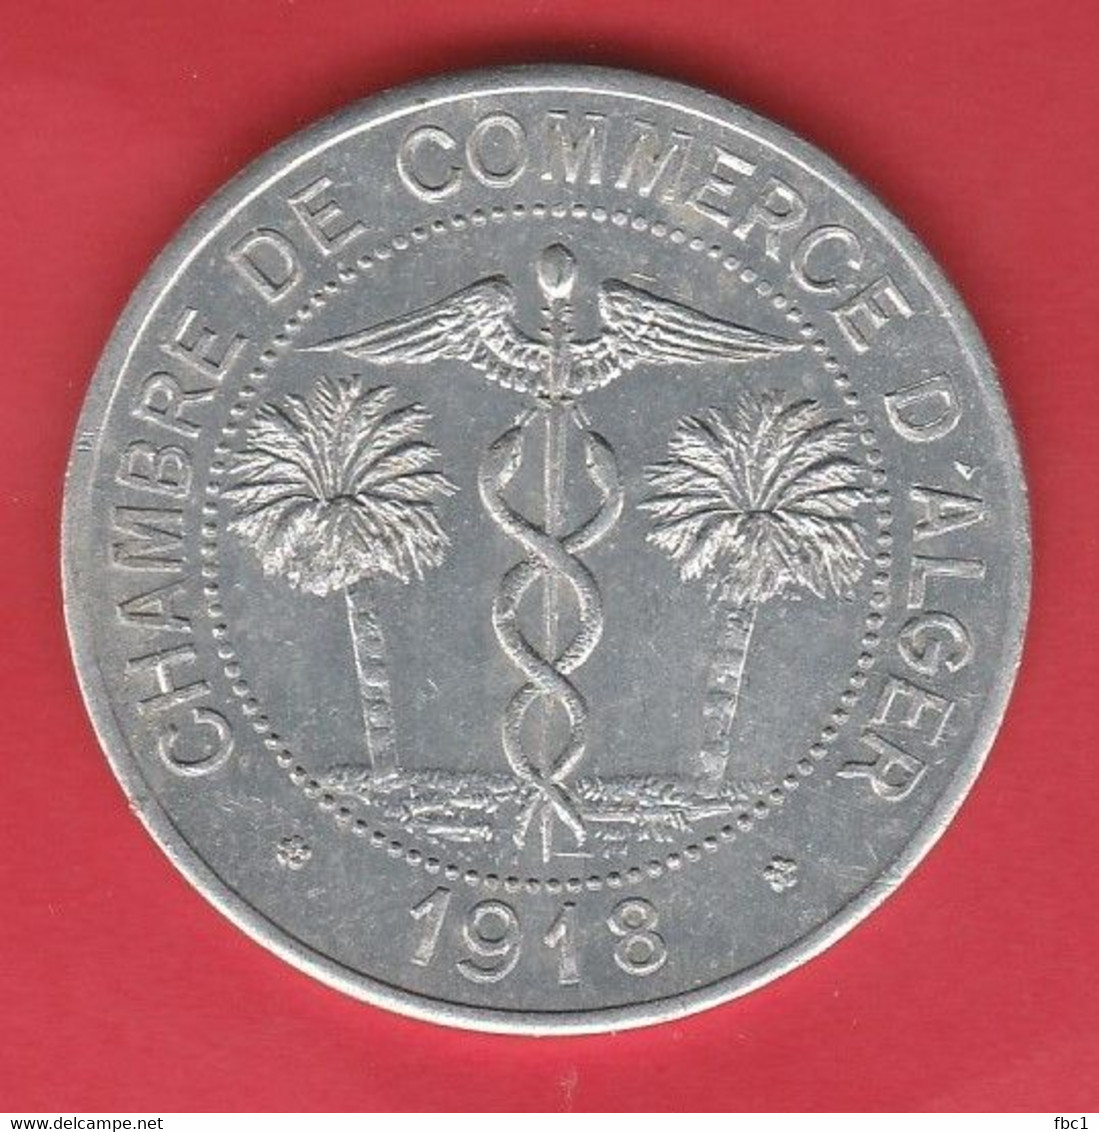 Algérie - Chambre De Commerce D'Alger 10 Centimes - 1918 (TBE) - Algérie